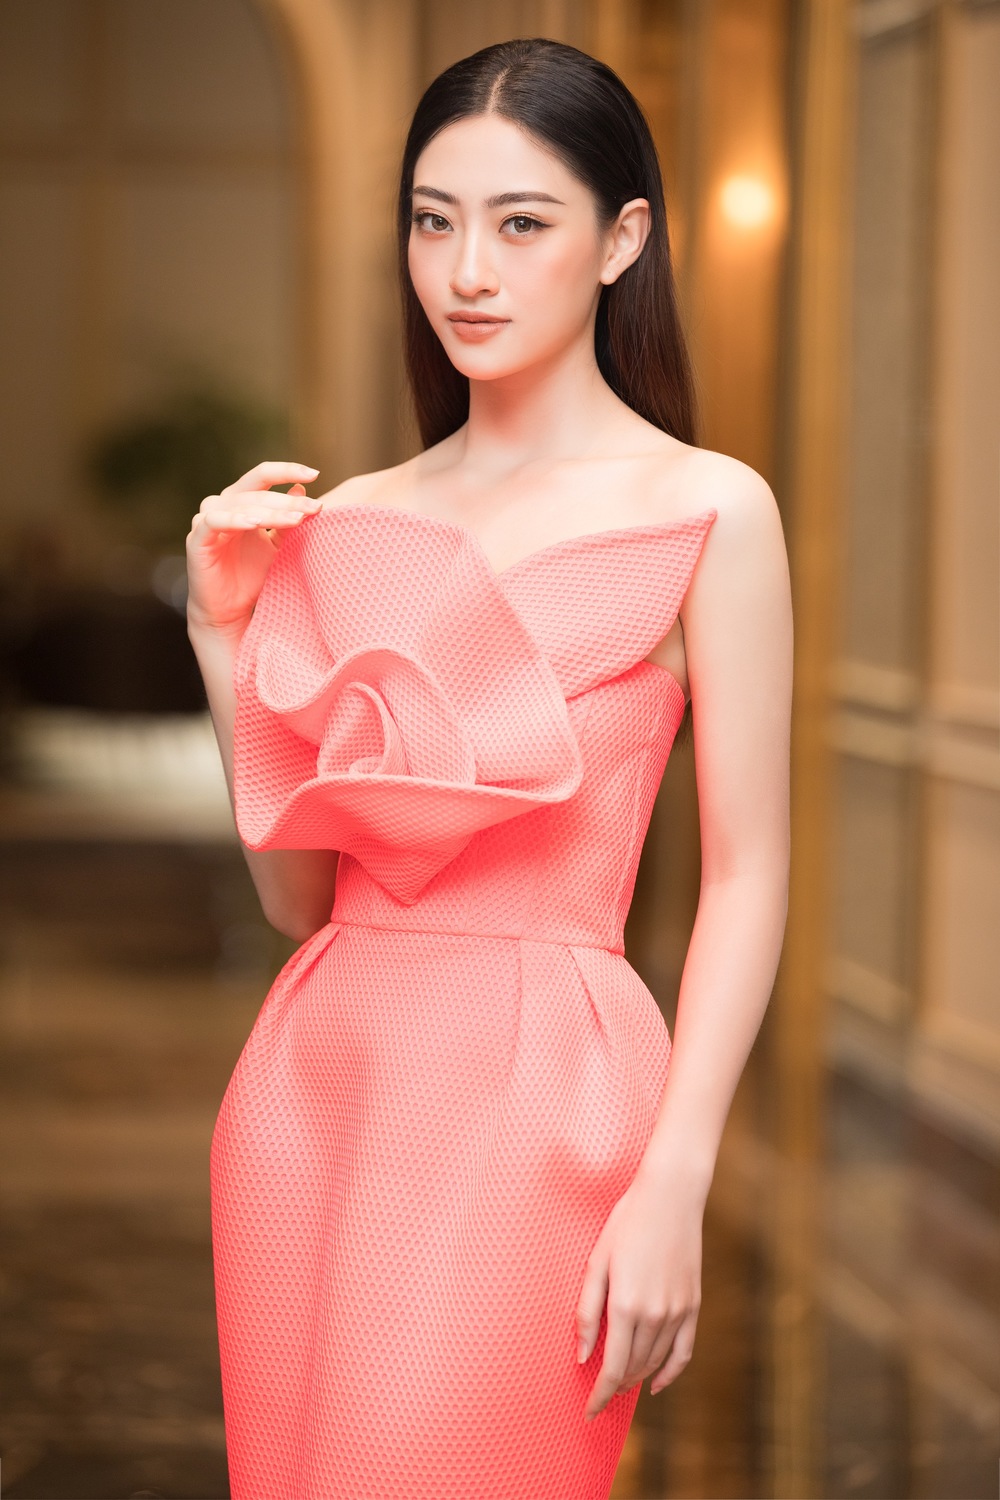 
Người đẹp cũng là tâm điểm chú ý tại sự kiện trong bộ váy cam chói tôn dáng cùng chiều cao 1m78 đầy ấn tượng (Ảnh: NVCC). - Tin sao Viet - Tin tuc sao Viet - Scandal sao Viet - Tin tuc cua Sao - Tin cua Sao